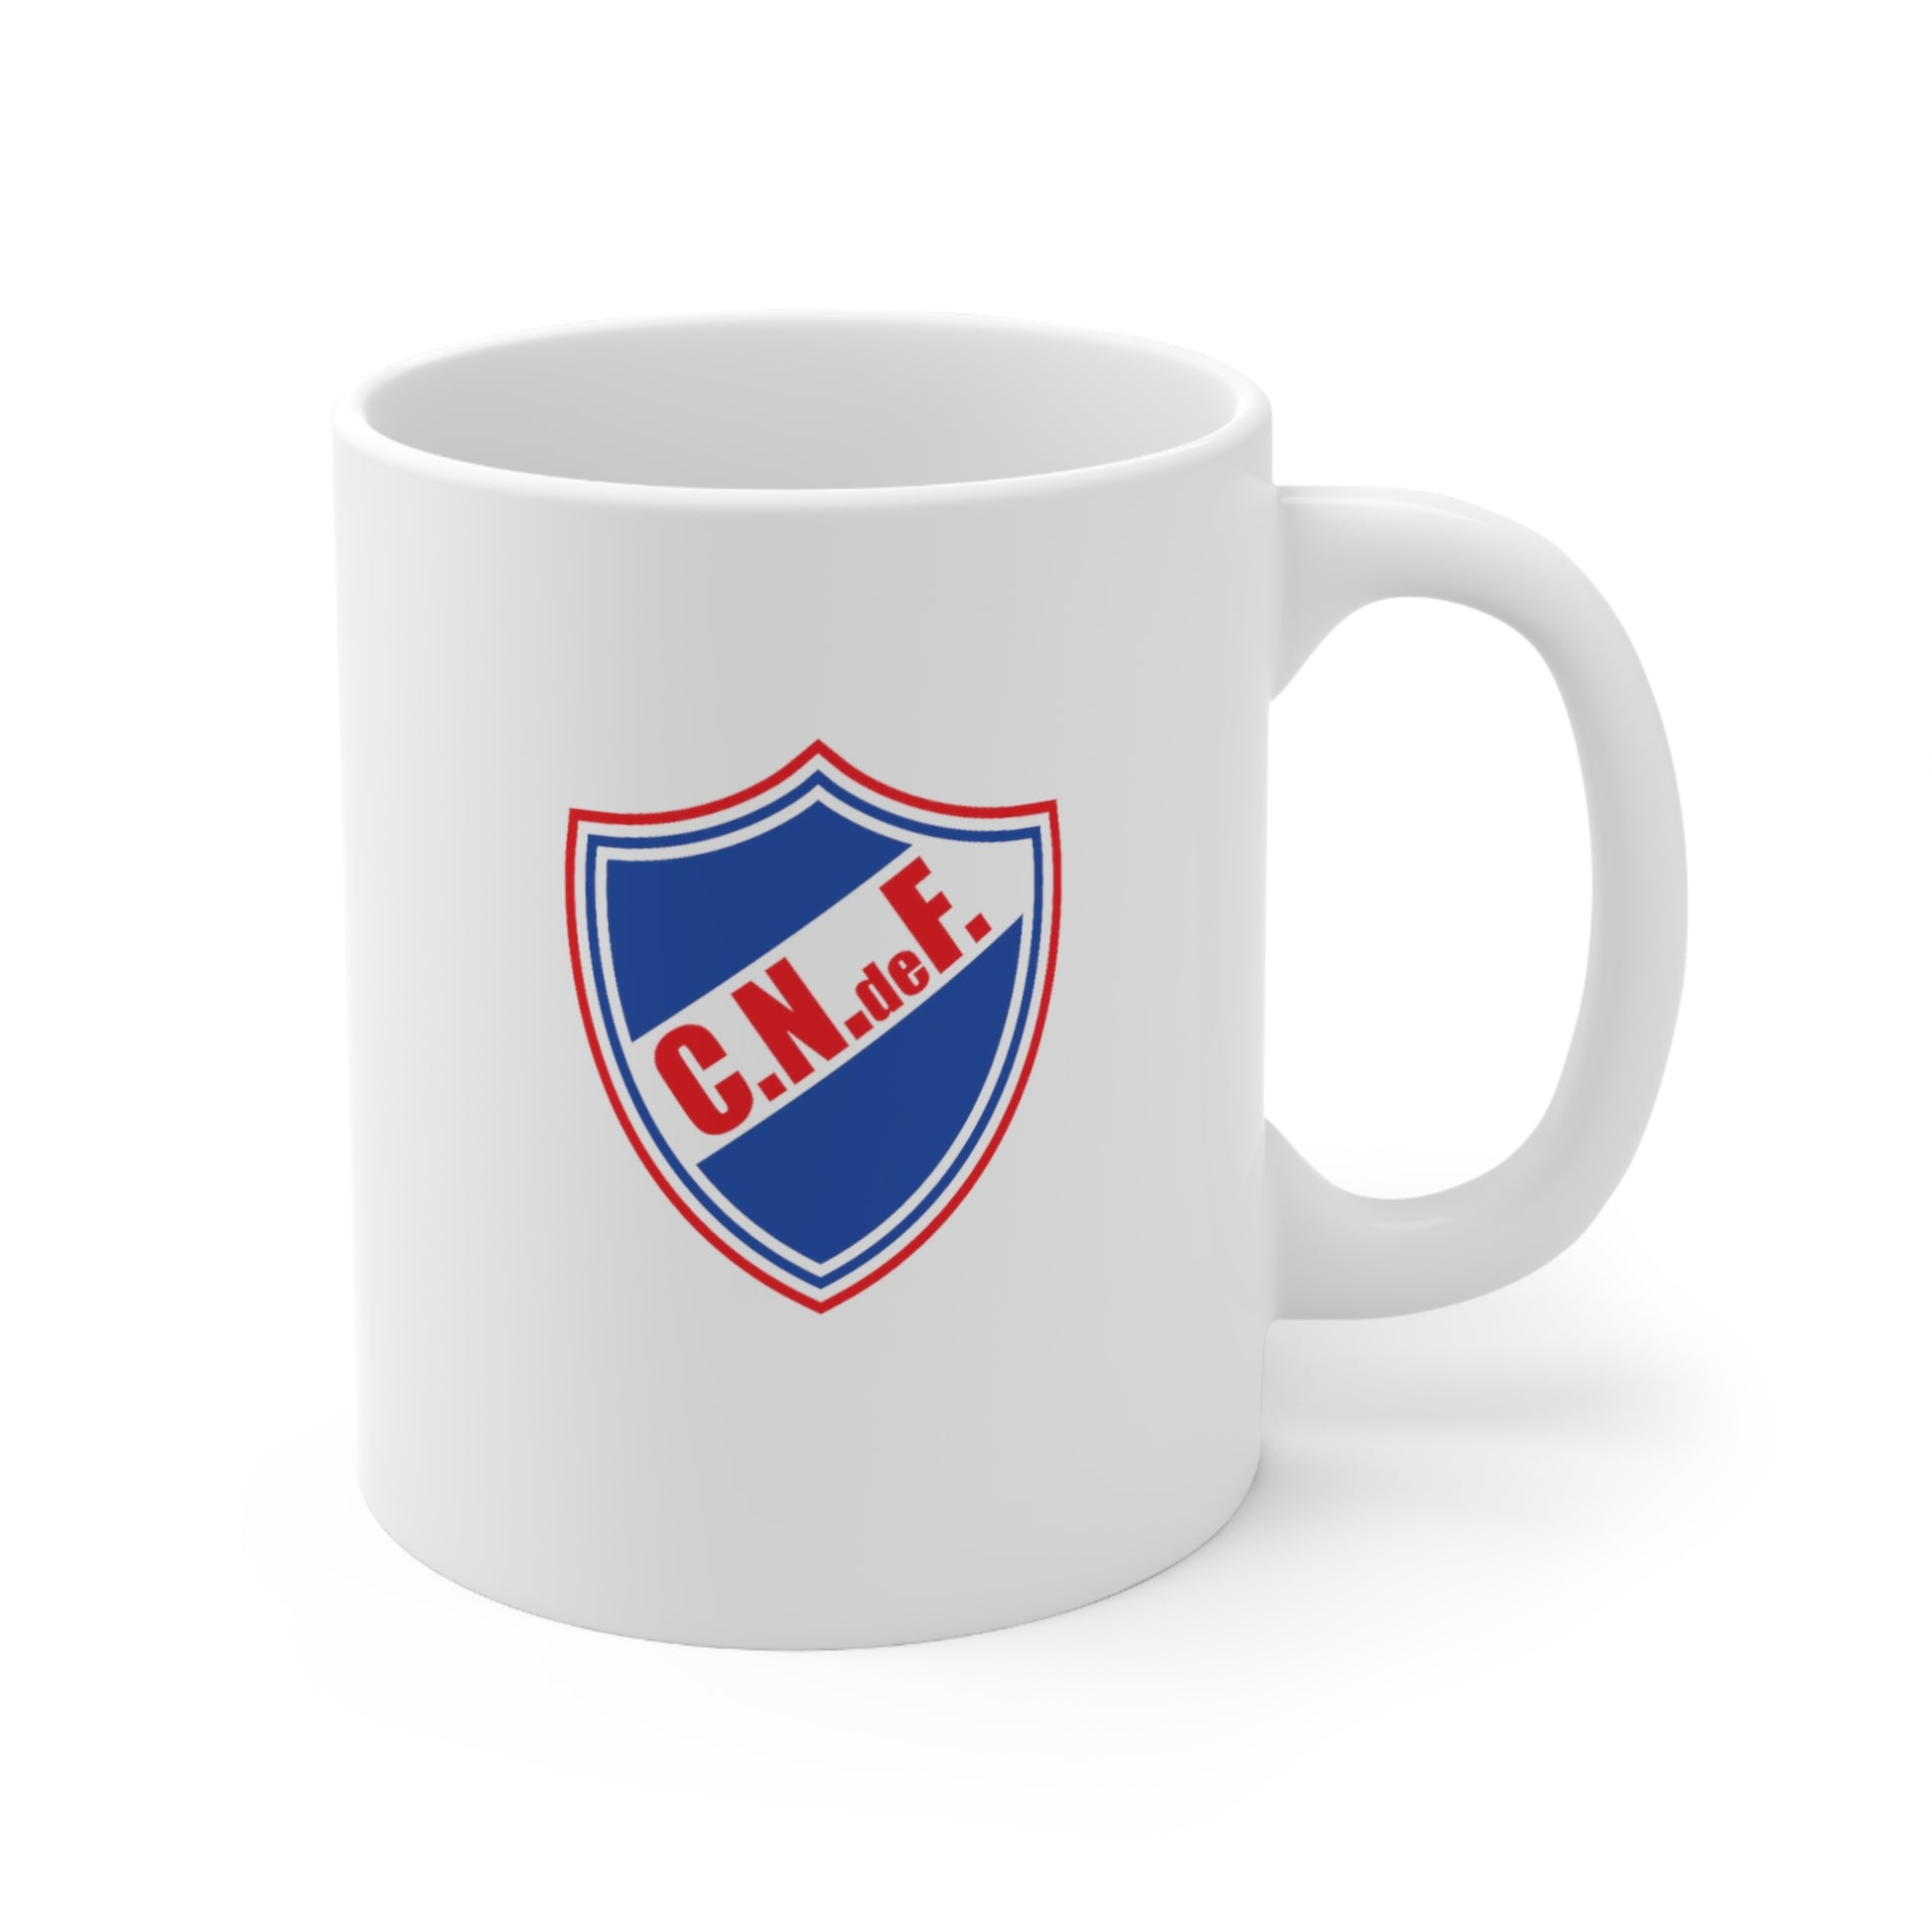 Club Nacional de Futbol Ceramic Mug